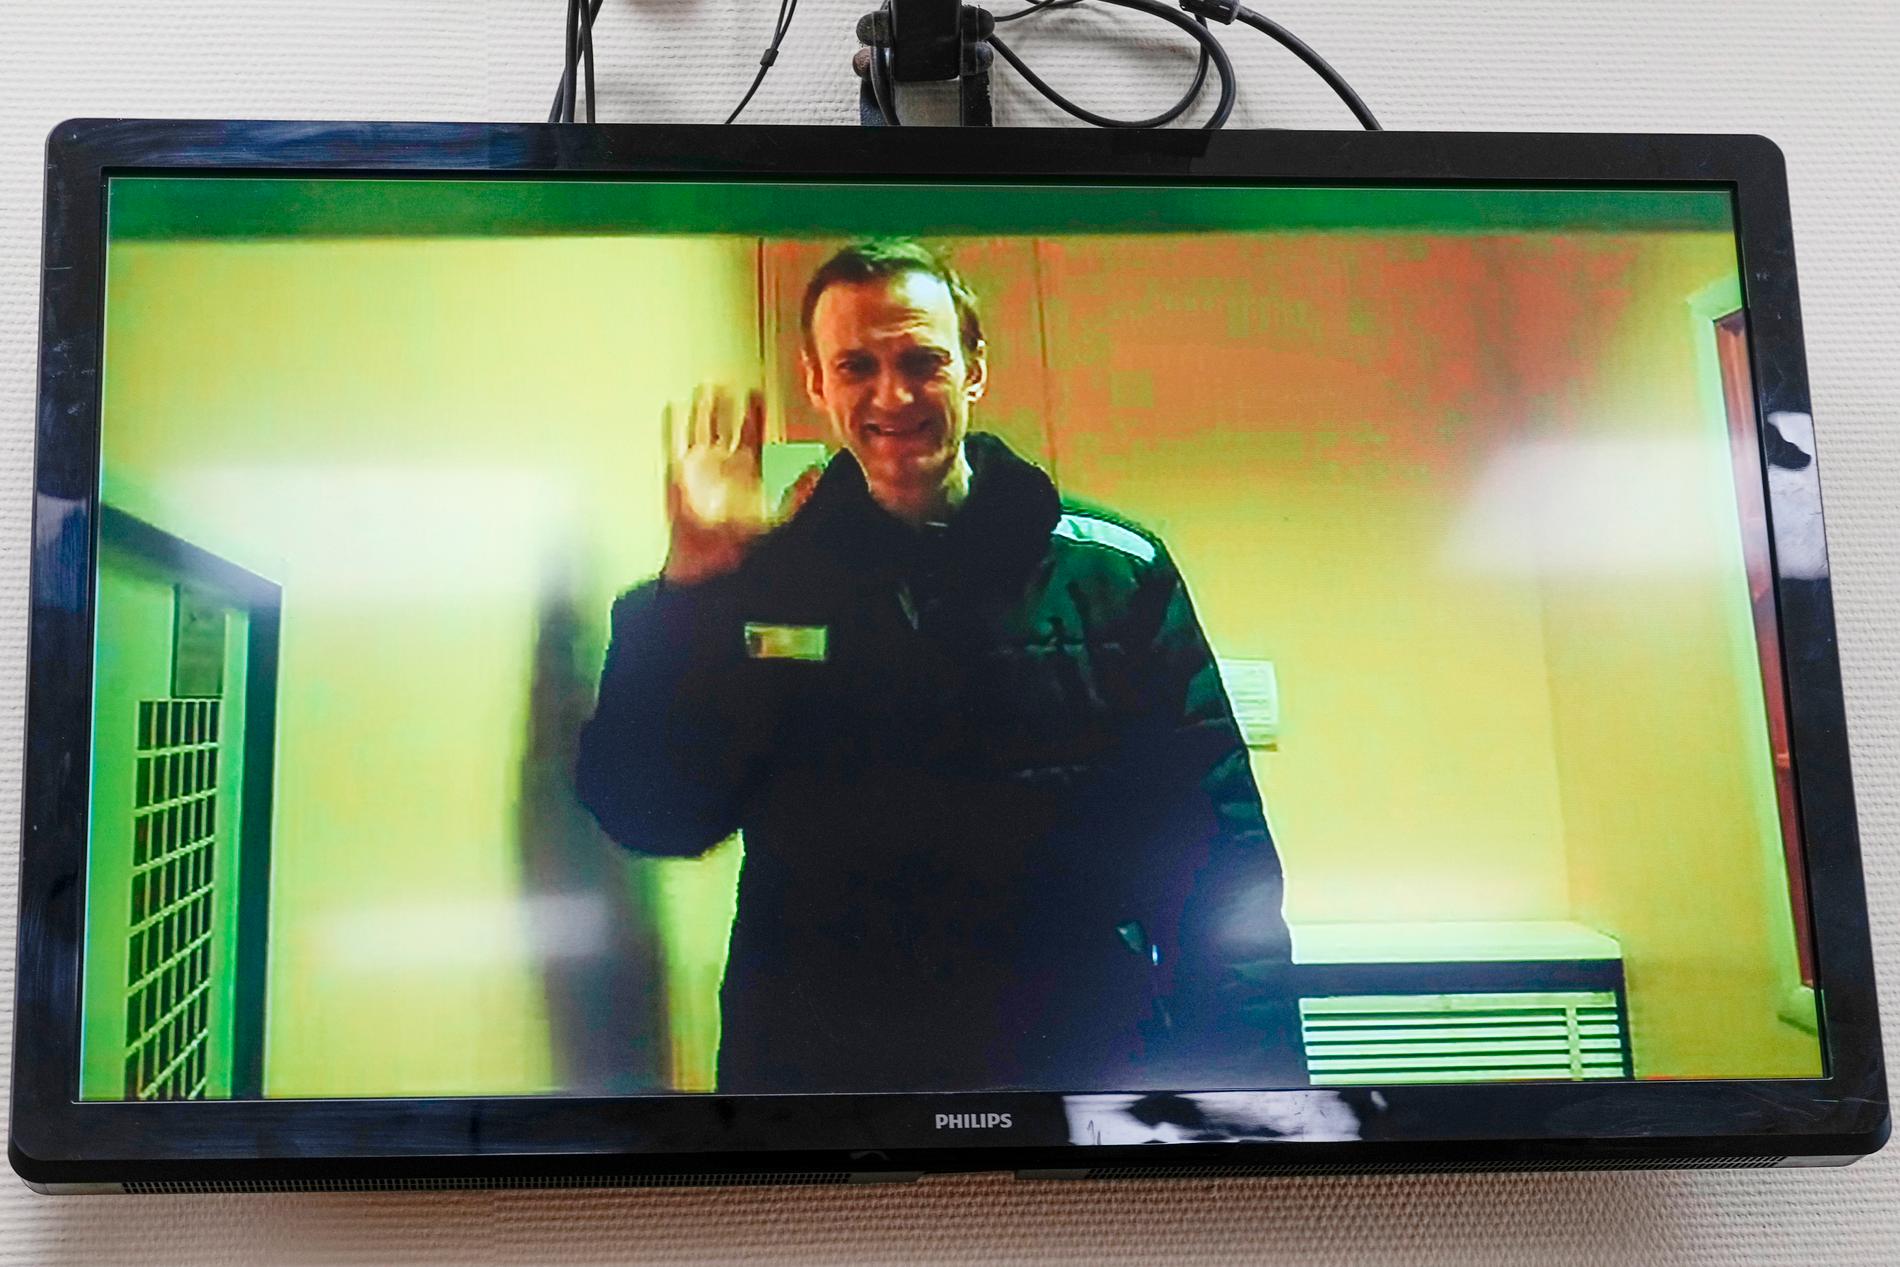 Den ryske oppositionspolitikern Aleksej Navalnyj på en tv-skärm där han deltar i en domstolsförhandling på distans. Arkivbild.